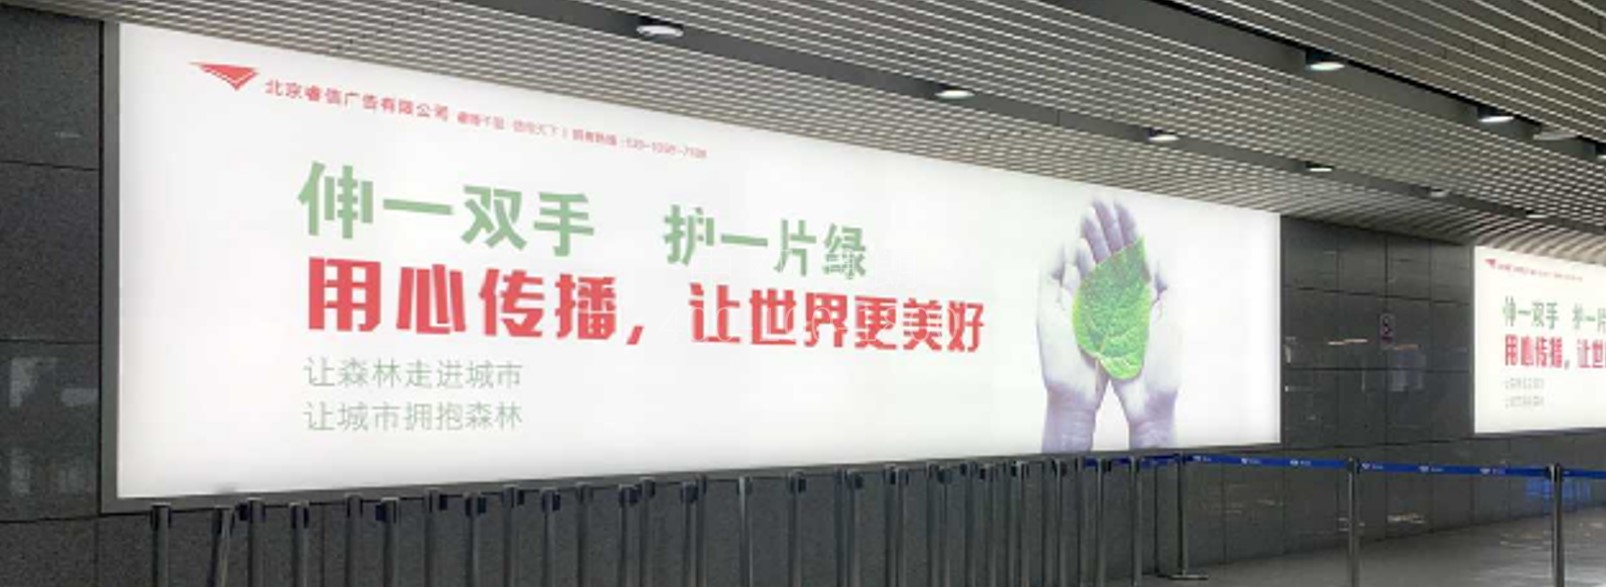 北京首都机场广告-T3到达出租车道落地灯箱套装